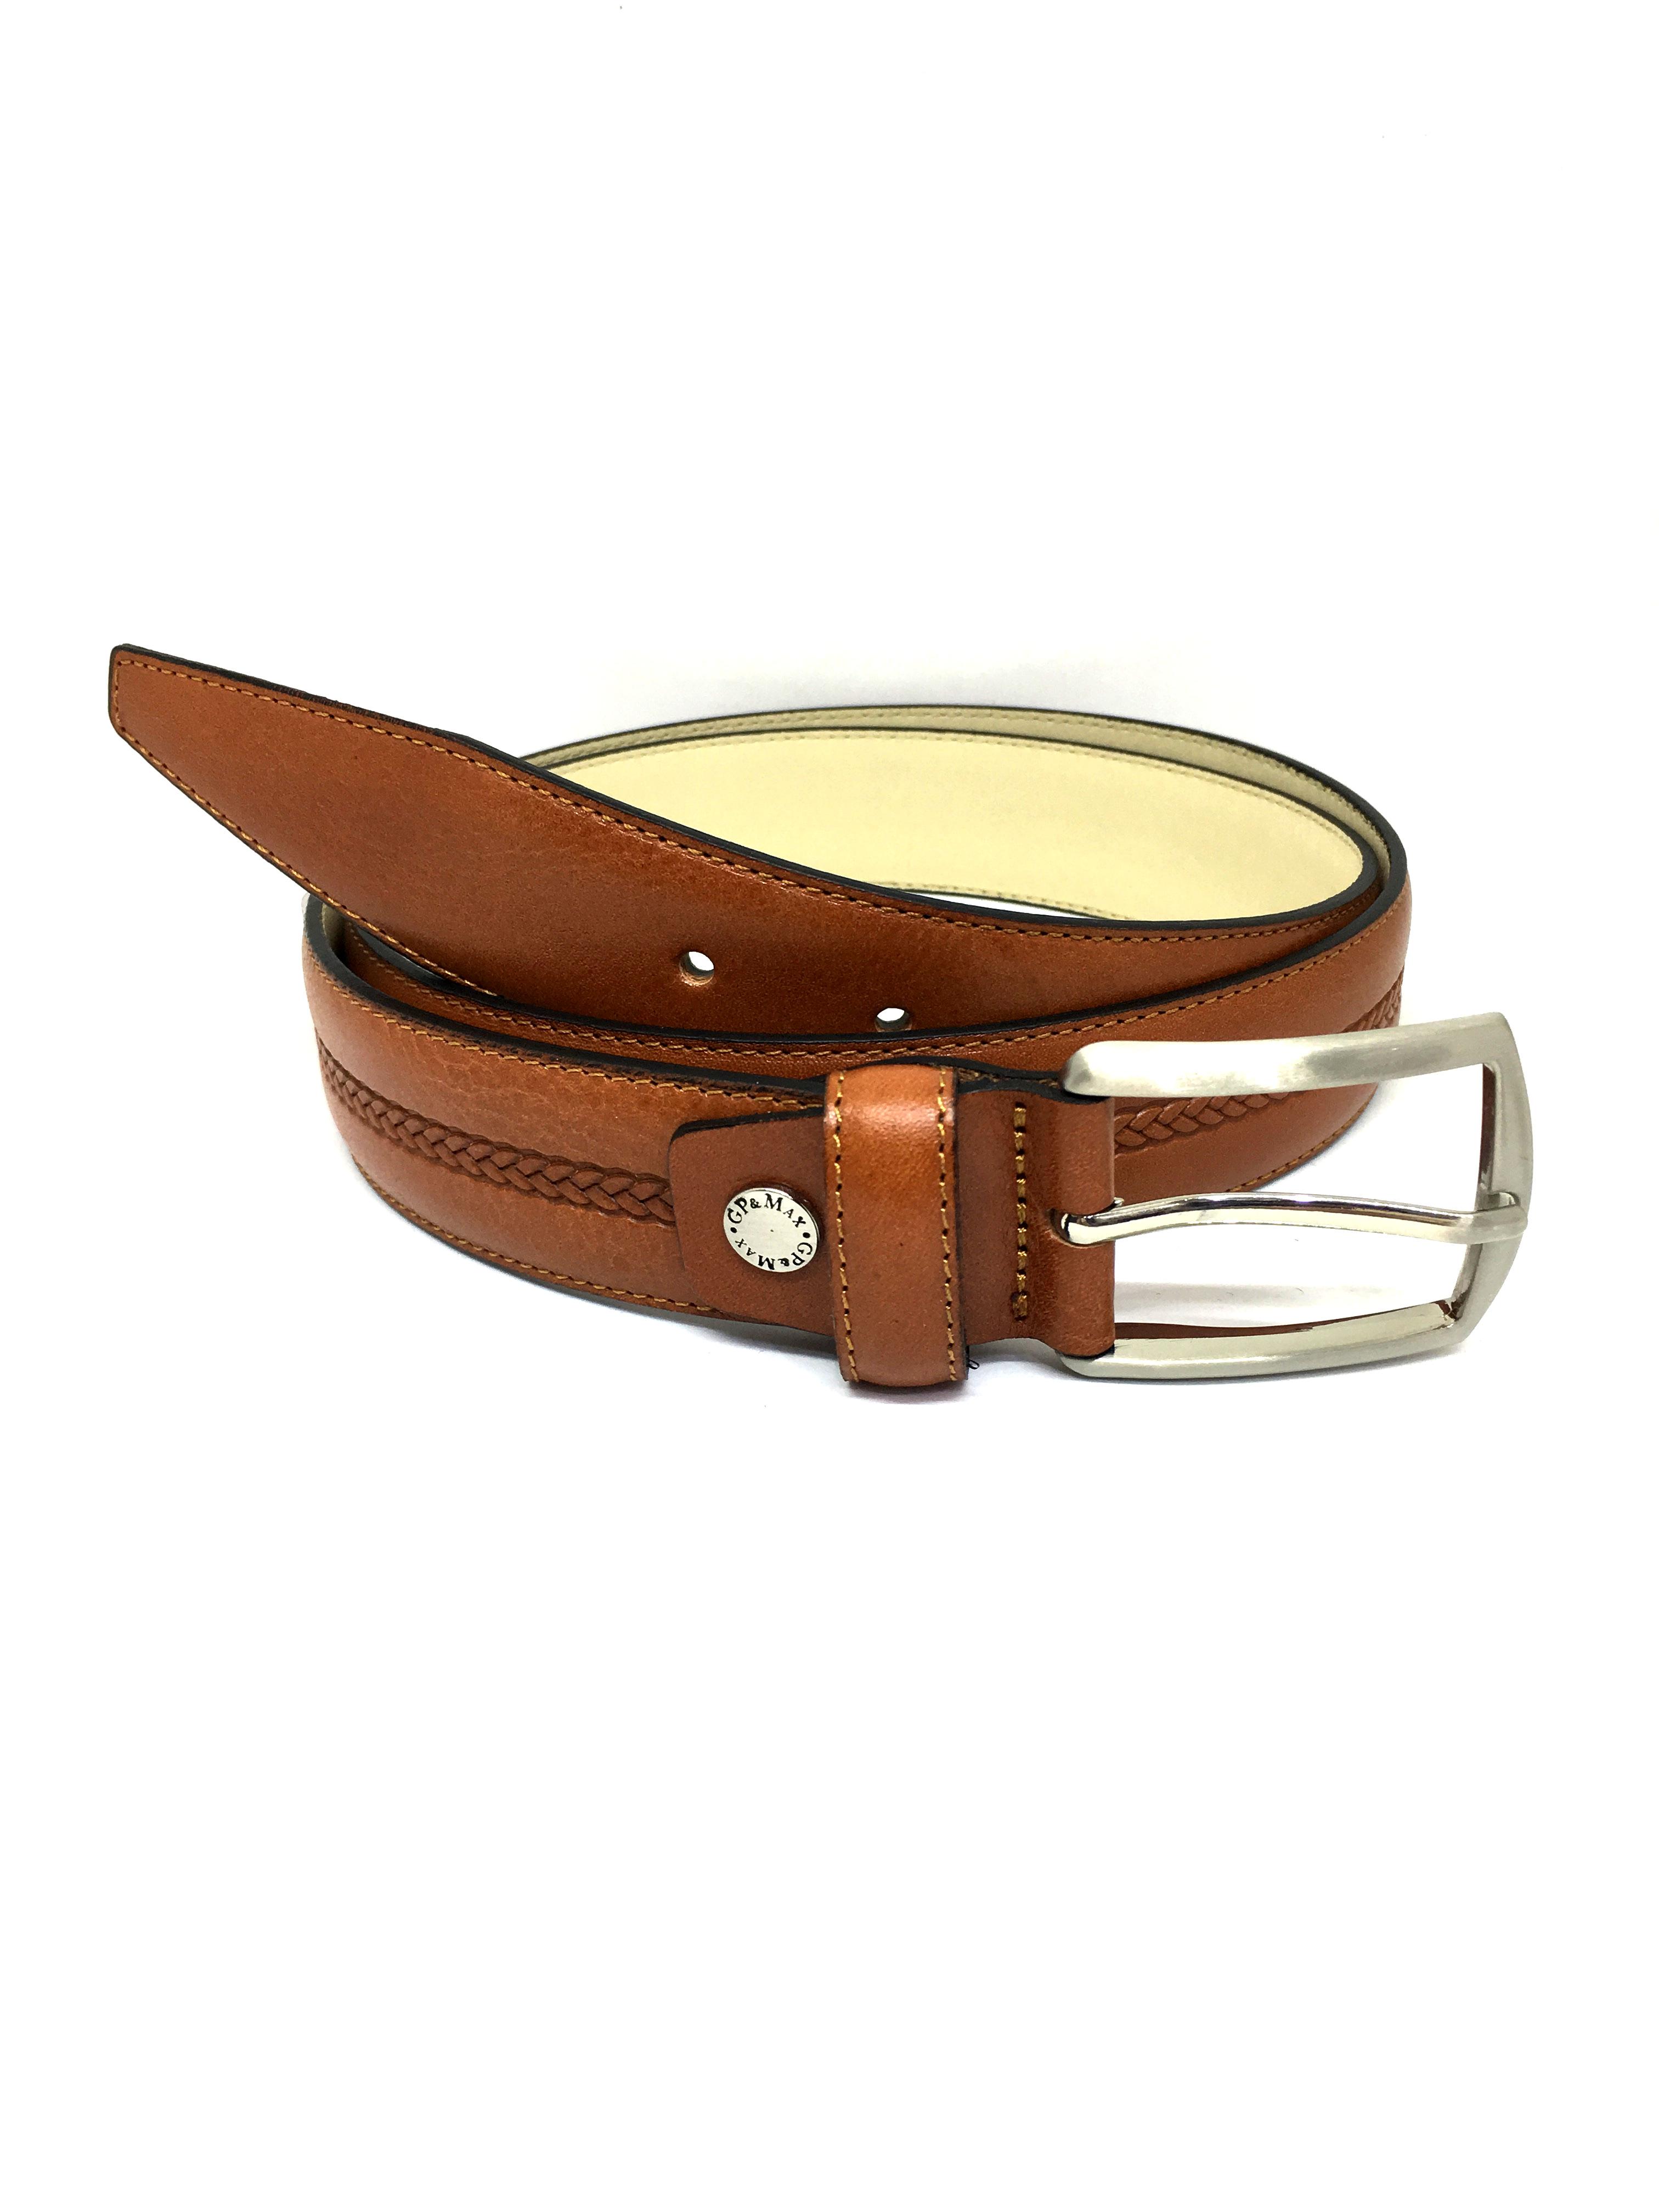 Cinturones Complementos Cognac Lommy-W 3619/35 #c Efashion Paris